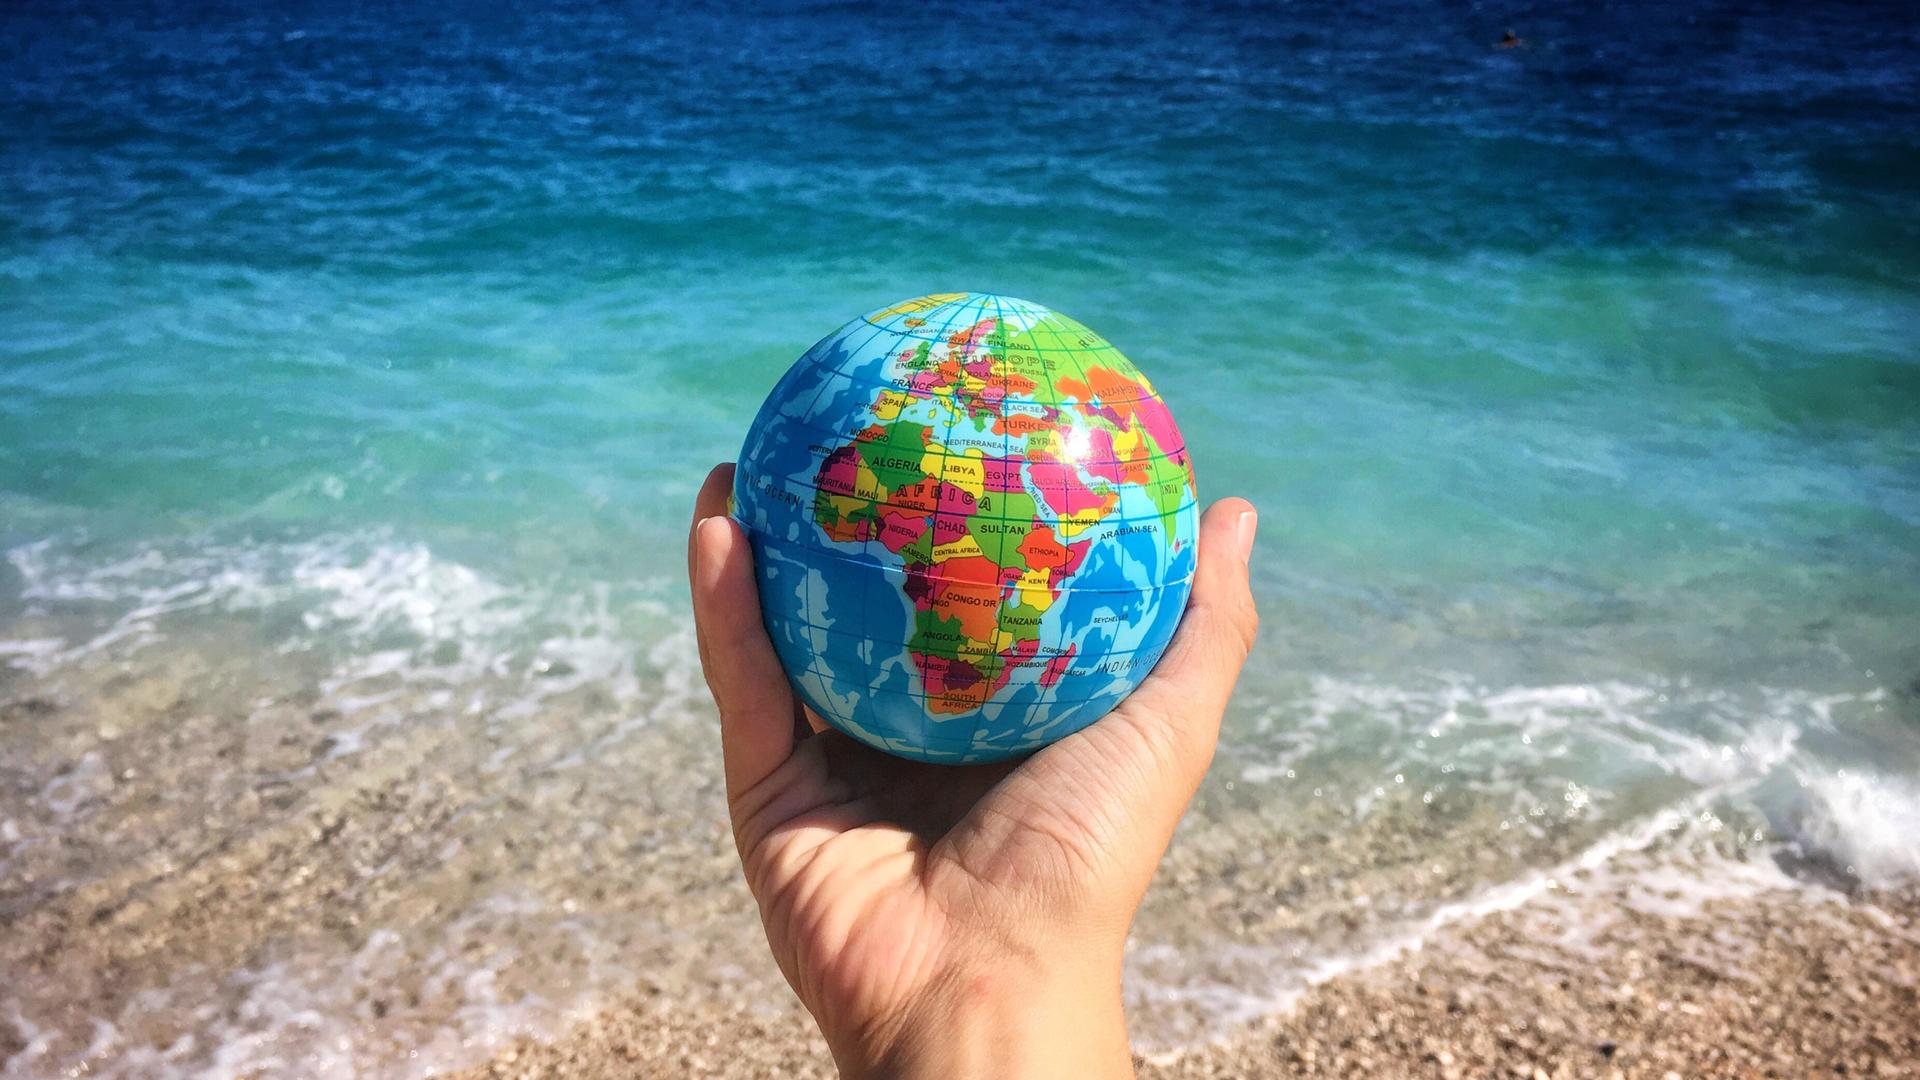 Eine Hand hält einen kleinen Globus, im Hintergrund sieht man das Meer.